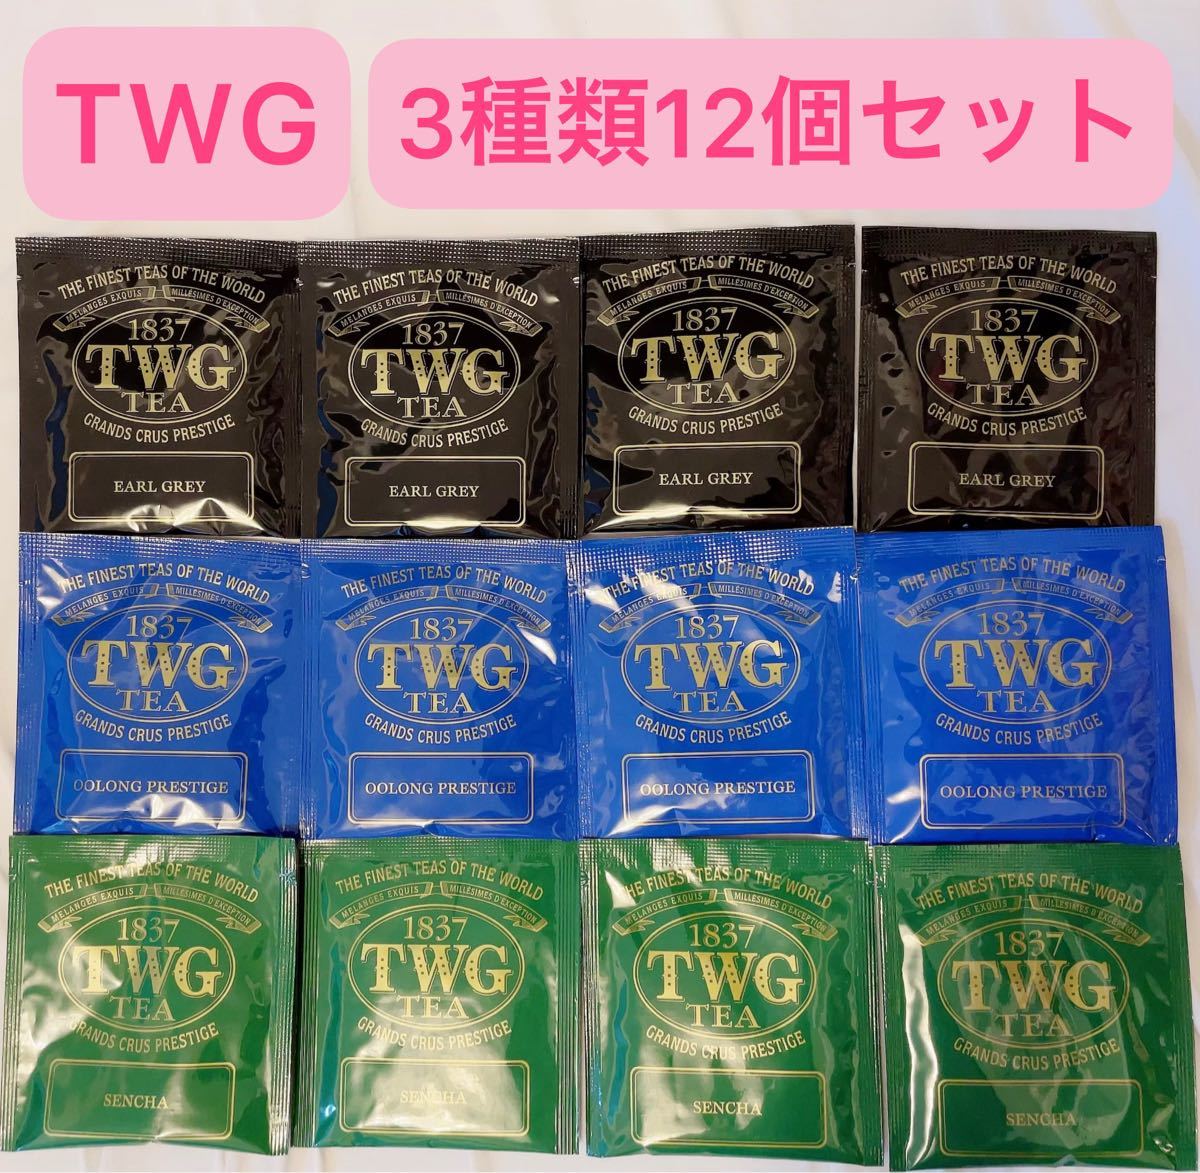 TWG Tea 3種類 12個セット 紅茶 煎茶 烏龍茶 アールグレイ ブルーティー ウーロン茶 グリーンティー ティーバッグ